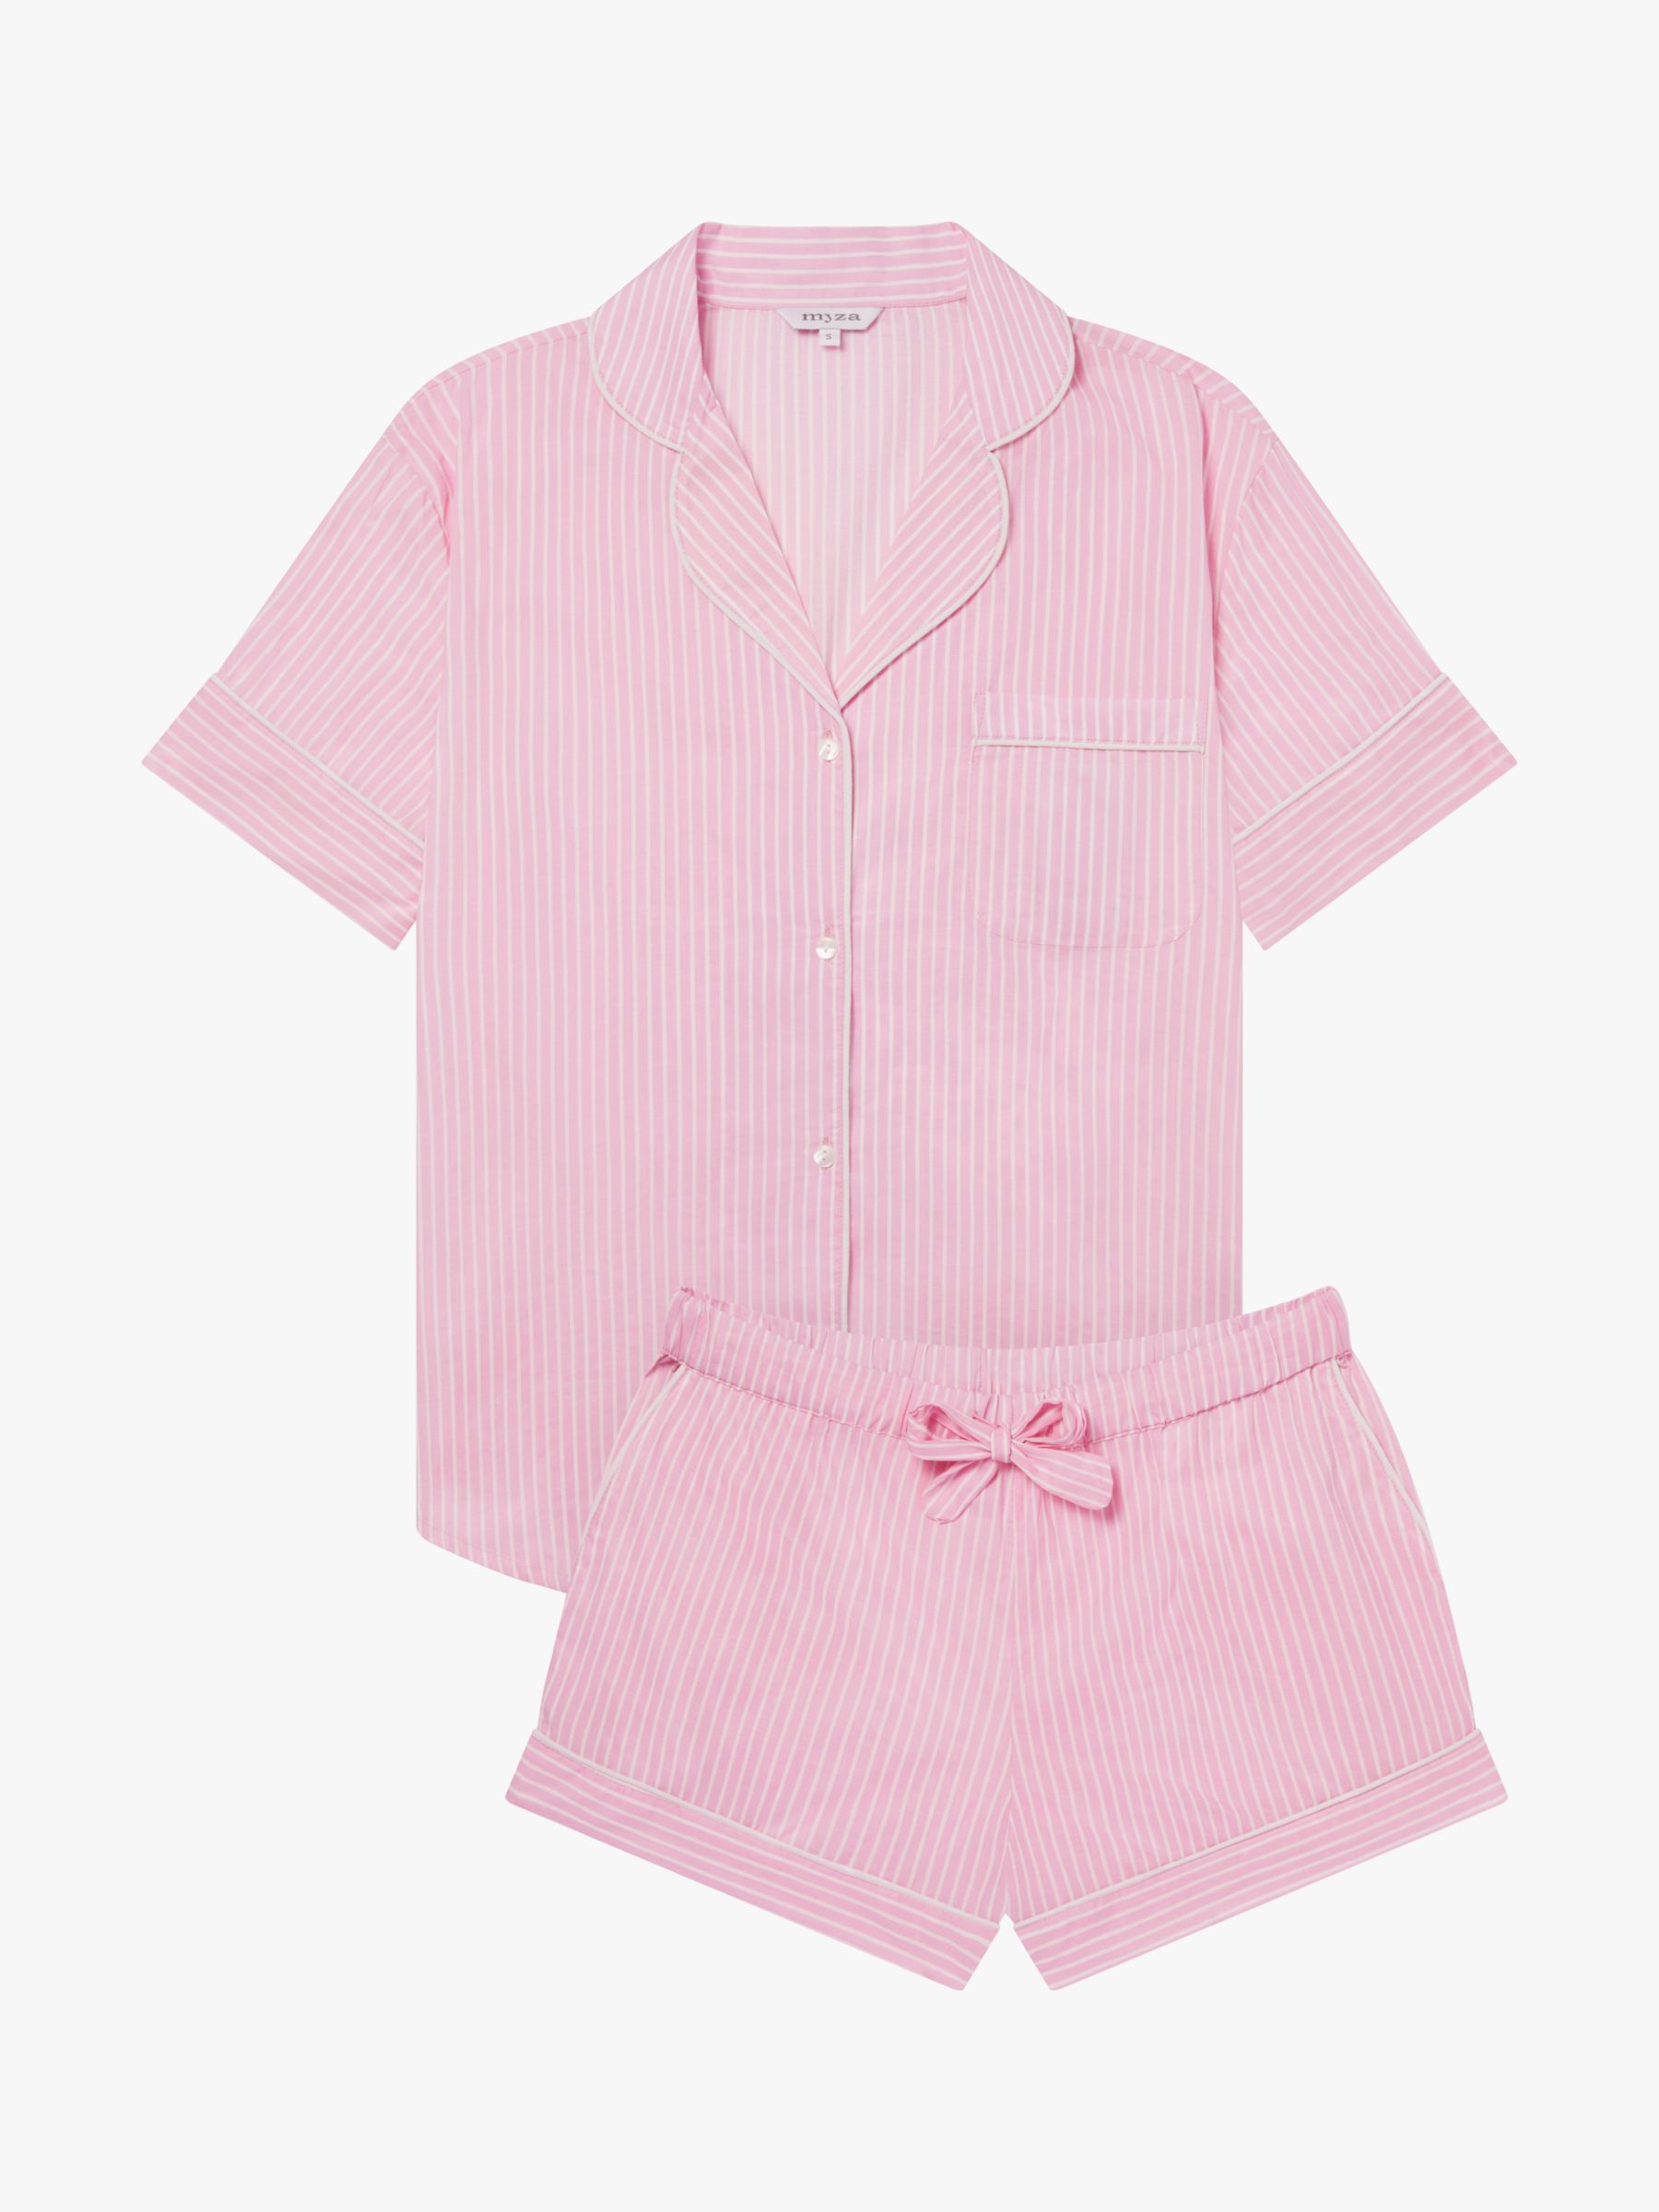 myza Organic Cotton Striped Short Sleeve Pyjama Set, Pink/White, XS